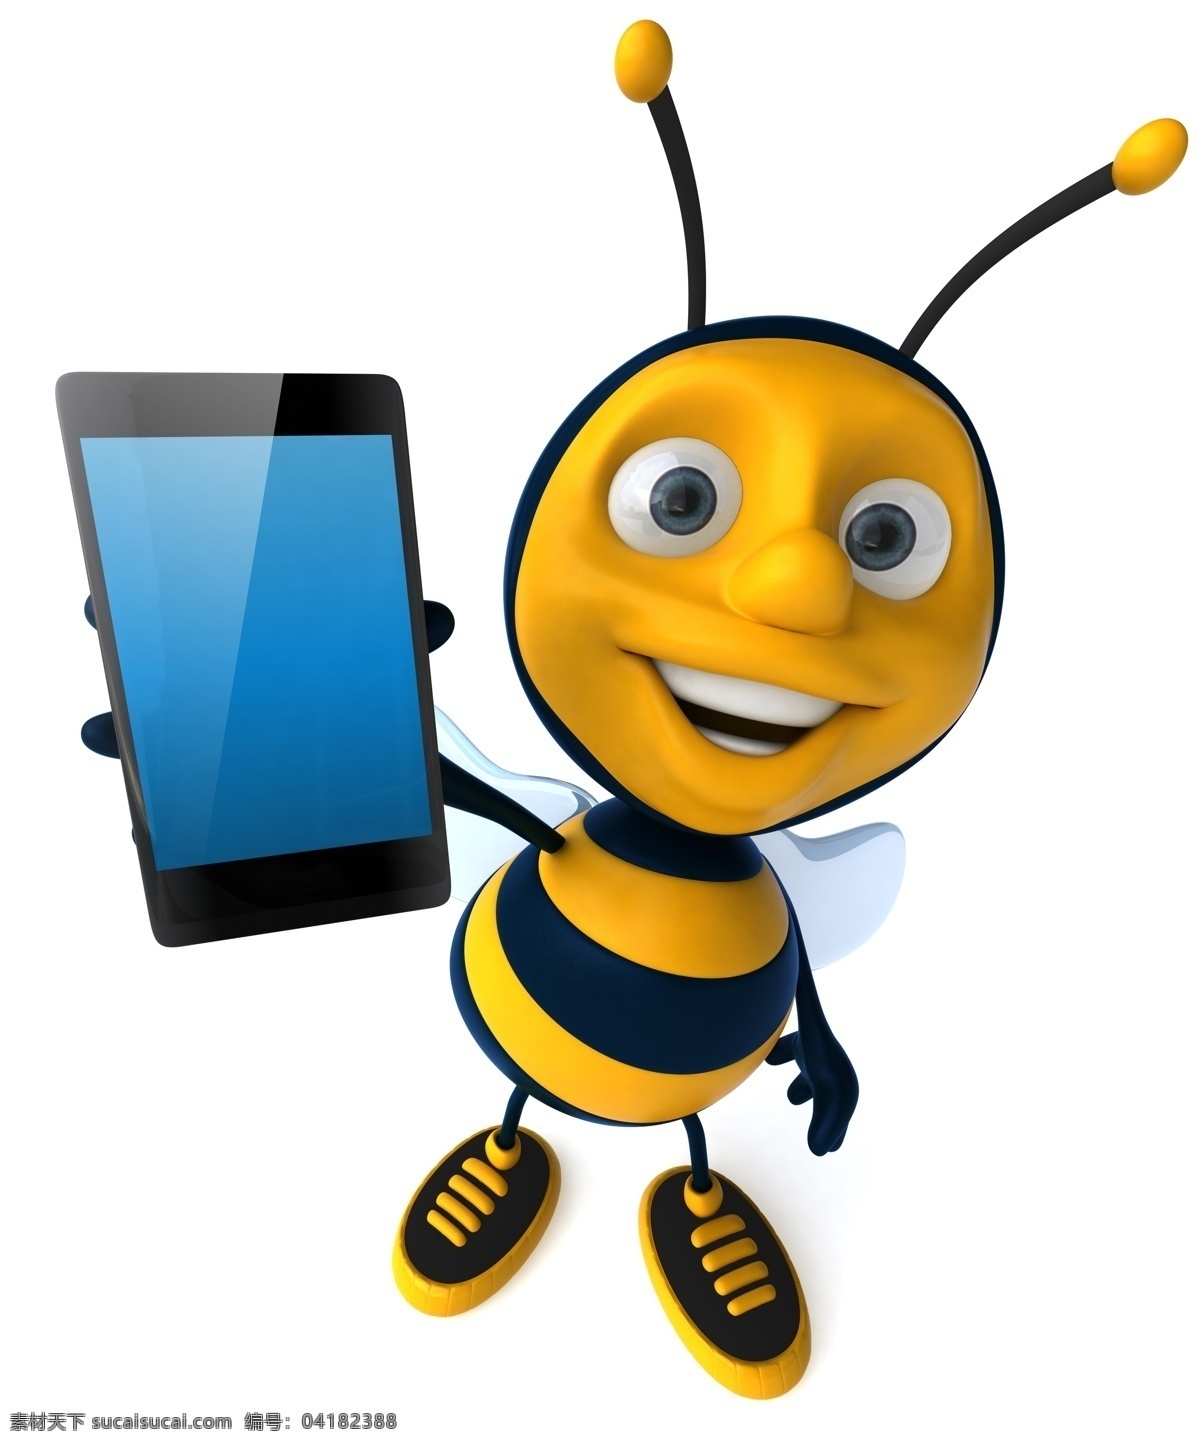 触 屏 手机 蜜蜂 触屏手机 数码产品 昆虫 3d动物 手机图片 现代科技